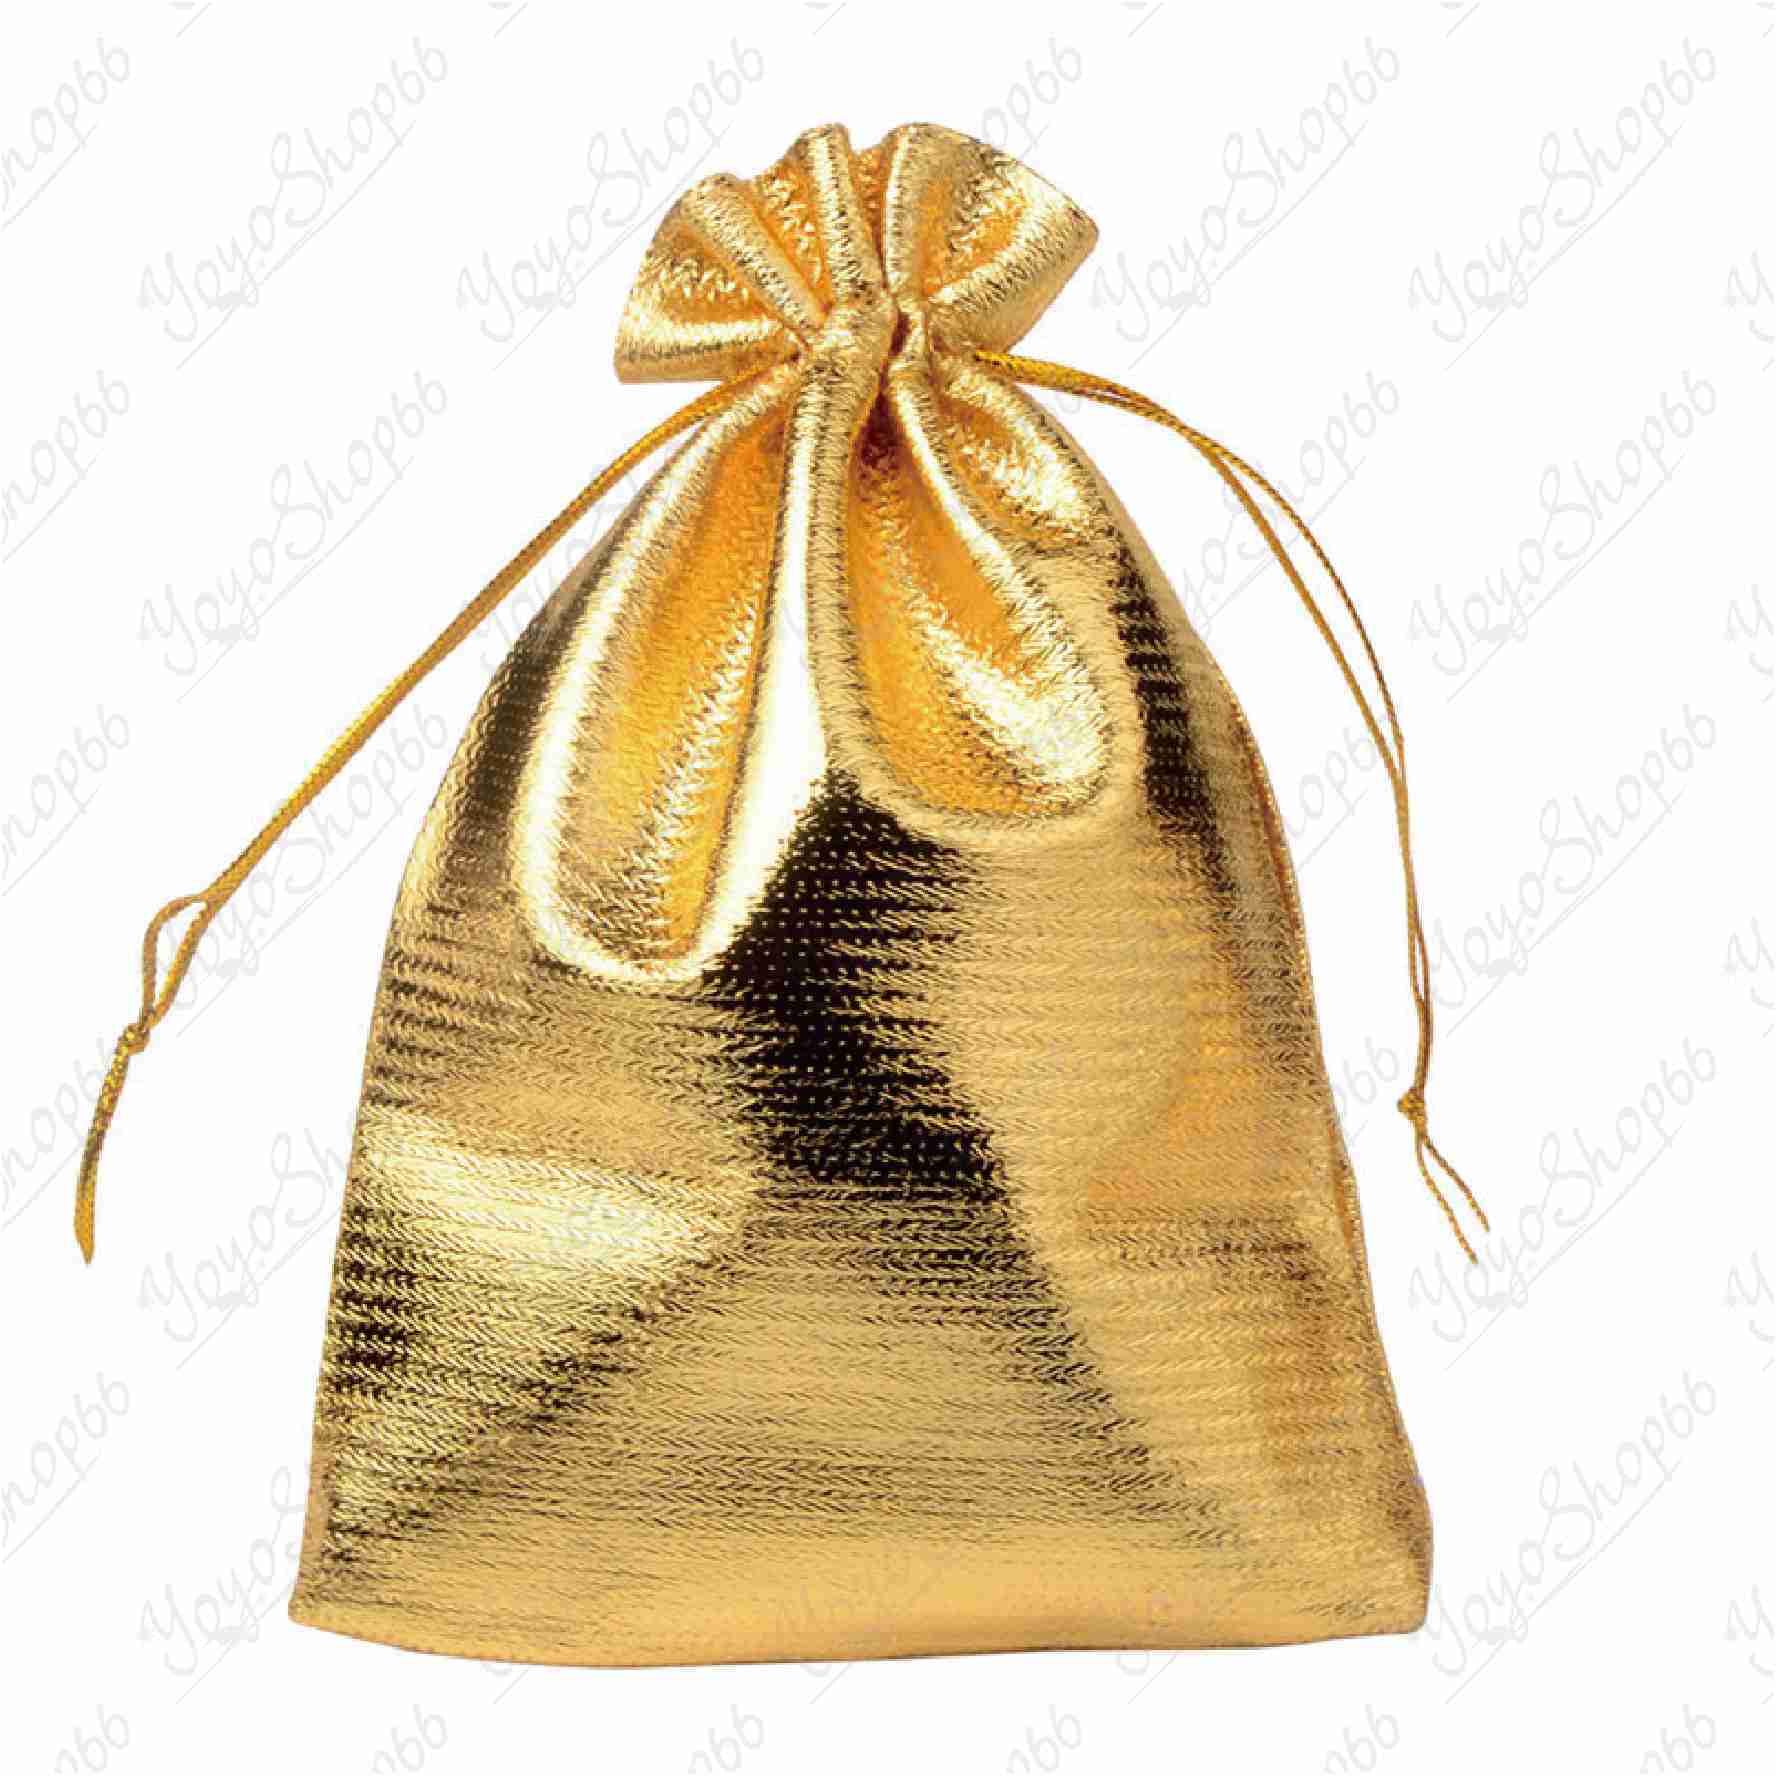 #631【中號 9*12CM(1入) 】首飾包裝袋(1入) 金銀布袋 束口抽繩袋 高檔首飾袋 金袋 禮品袋【愛尚生活】